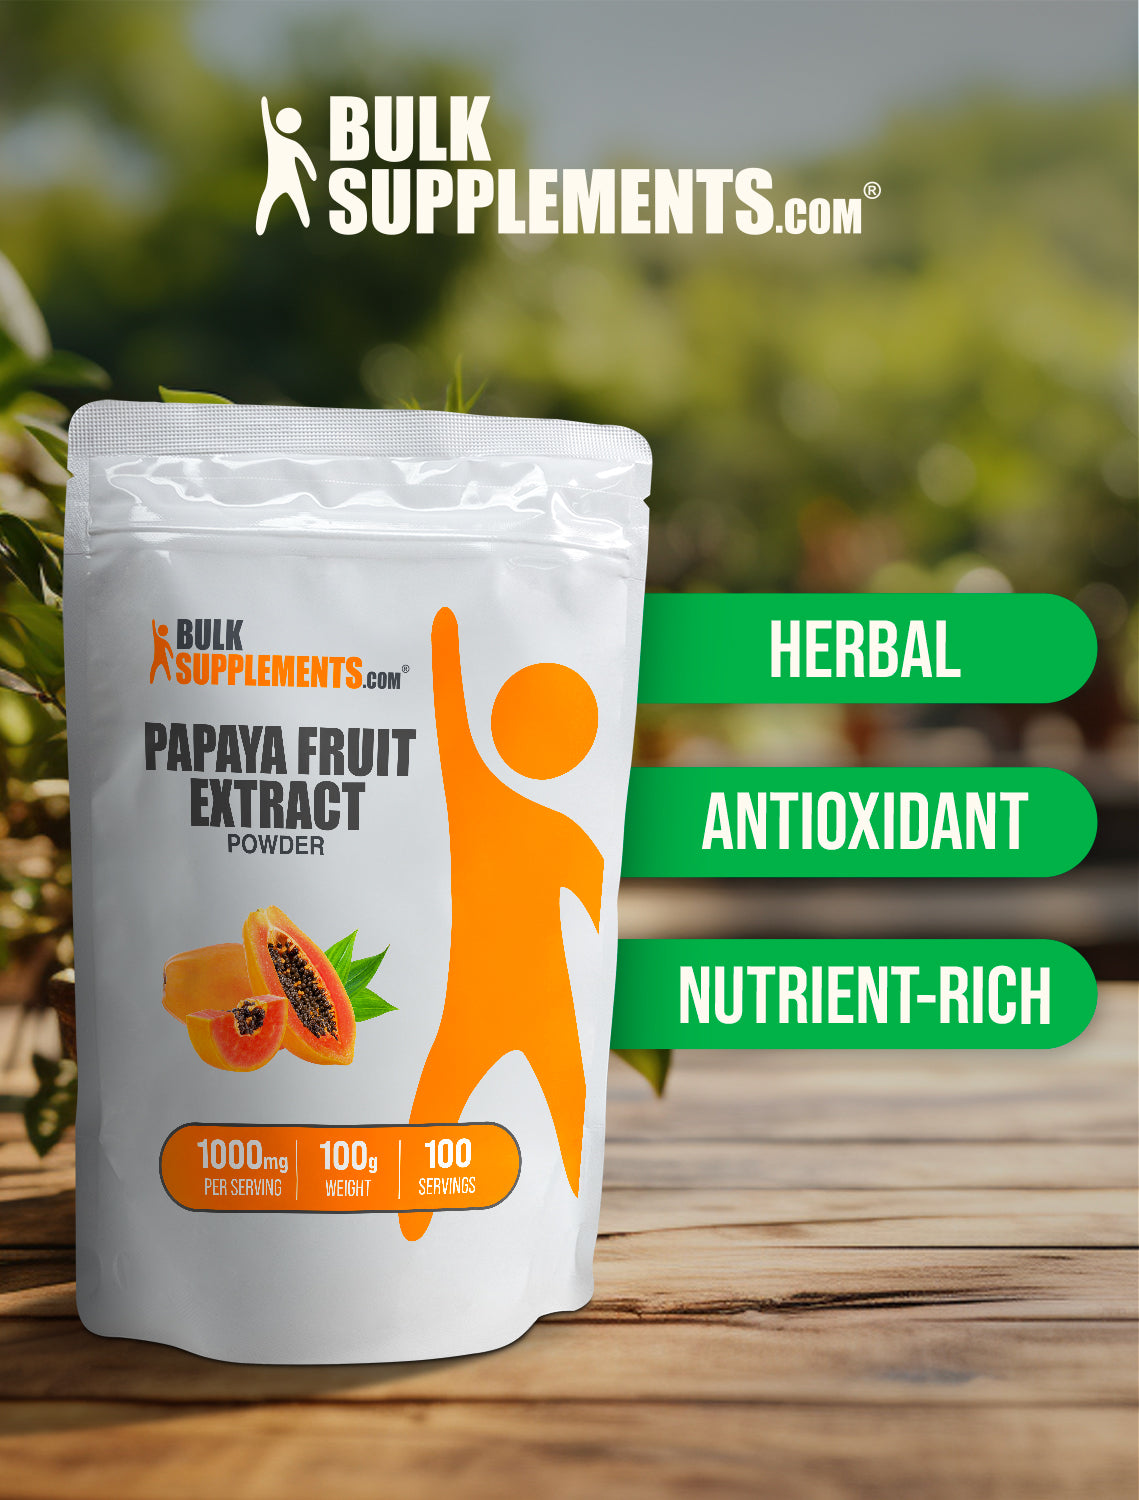 Papaya fruit extract powder 100g keywords image